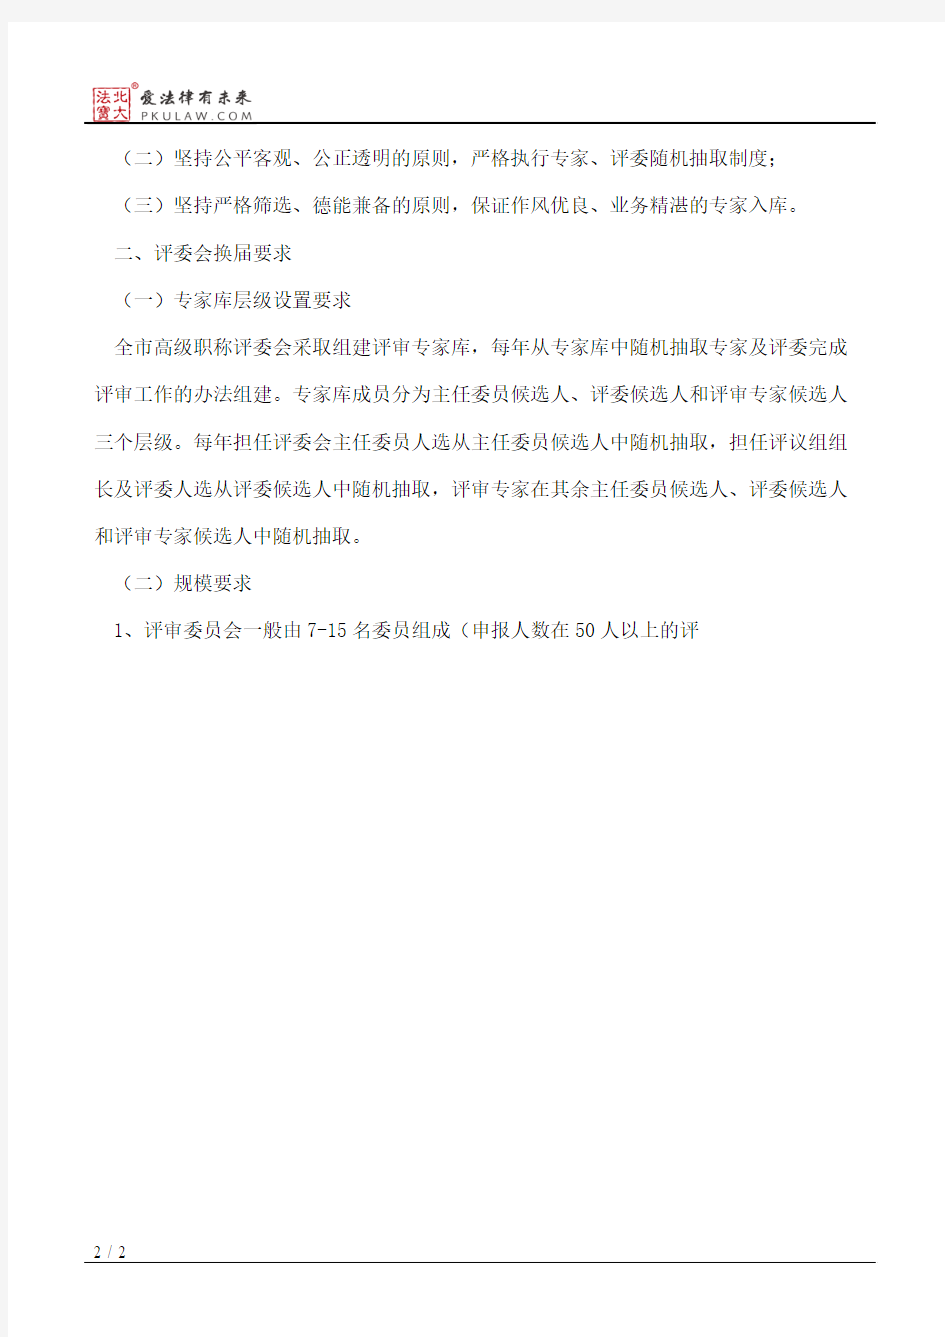 北京市人力资源和社会保障局关于做好2012年高级职称评委会换届工作的通知